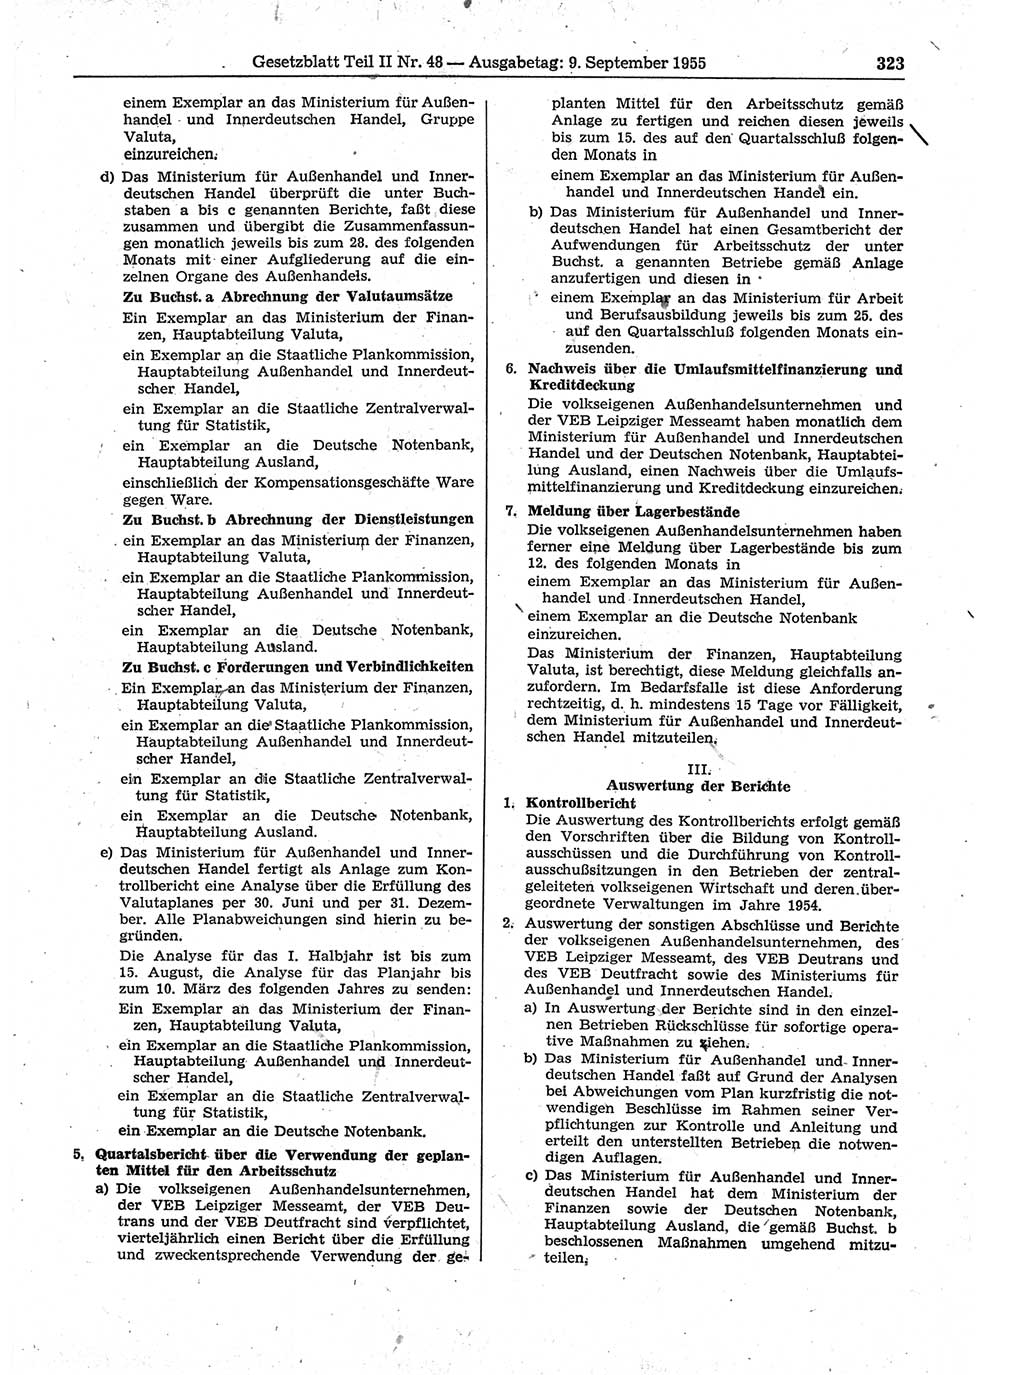 Gesetzblatt (GBl.) der Deutschen Demokratischen Republik (DDR) Teil ⅠⅠ 1955, Seite 323 (GBl. DDR ⅠⅠ 1955, S. 323)